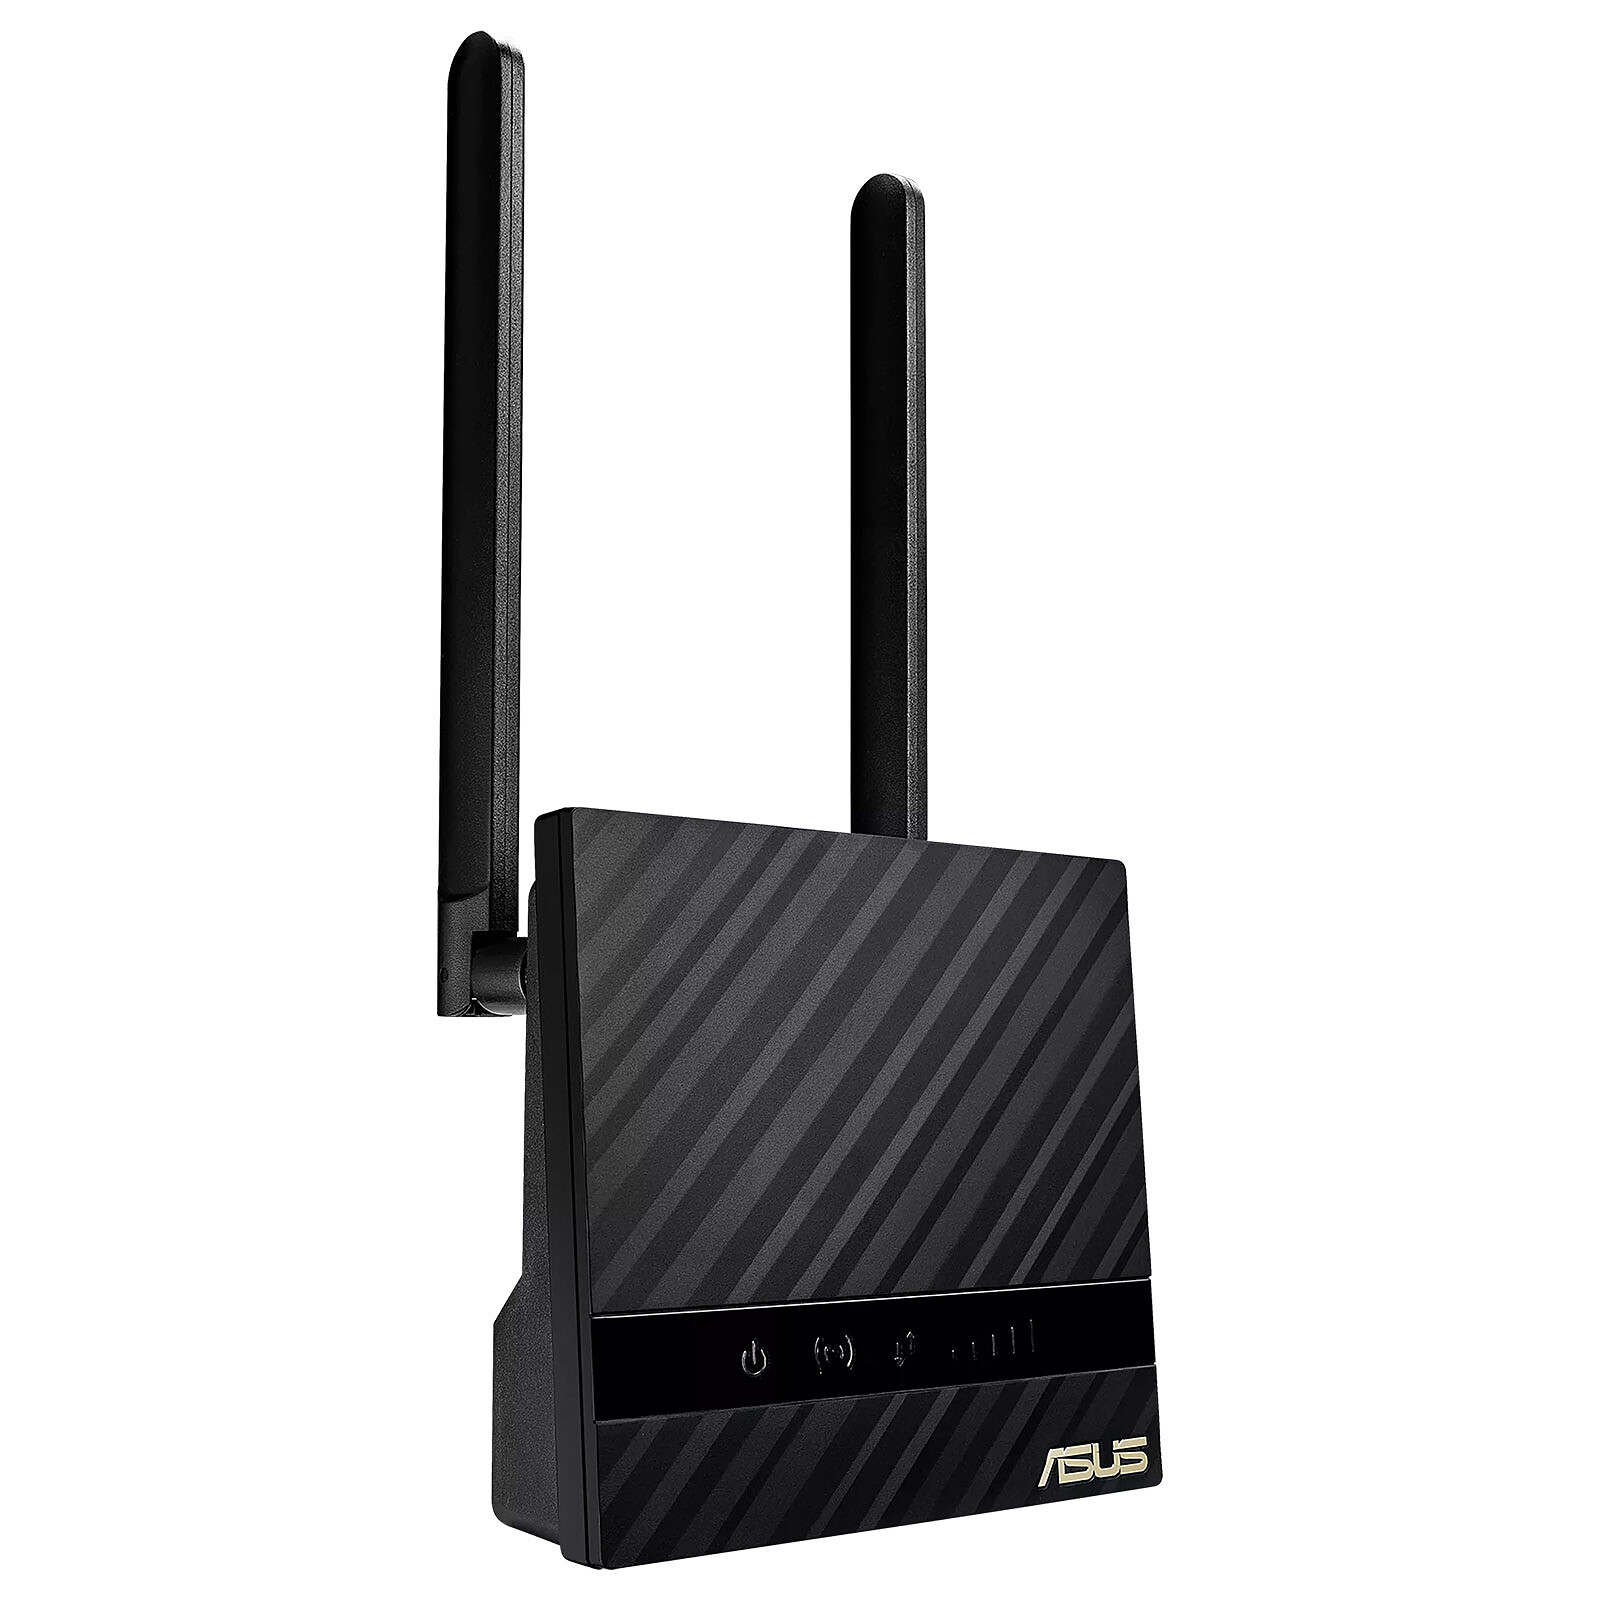 Modem routeur Tp-Link 4G LTE Mobile Wi-Fi M7200 Noir pas cher